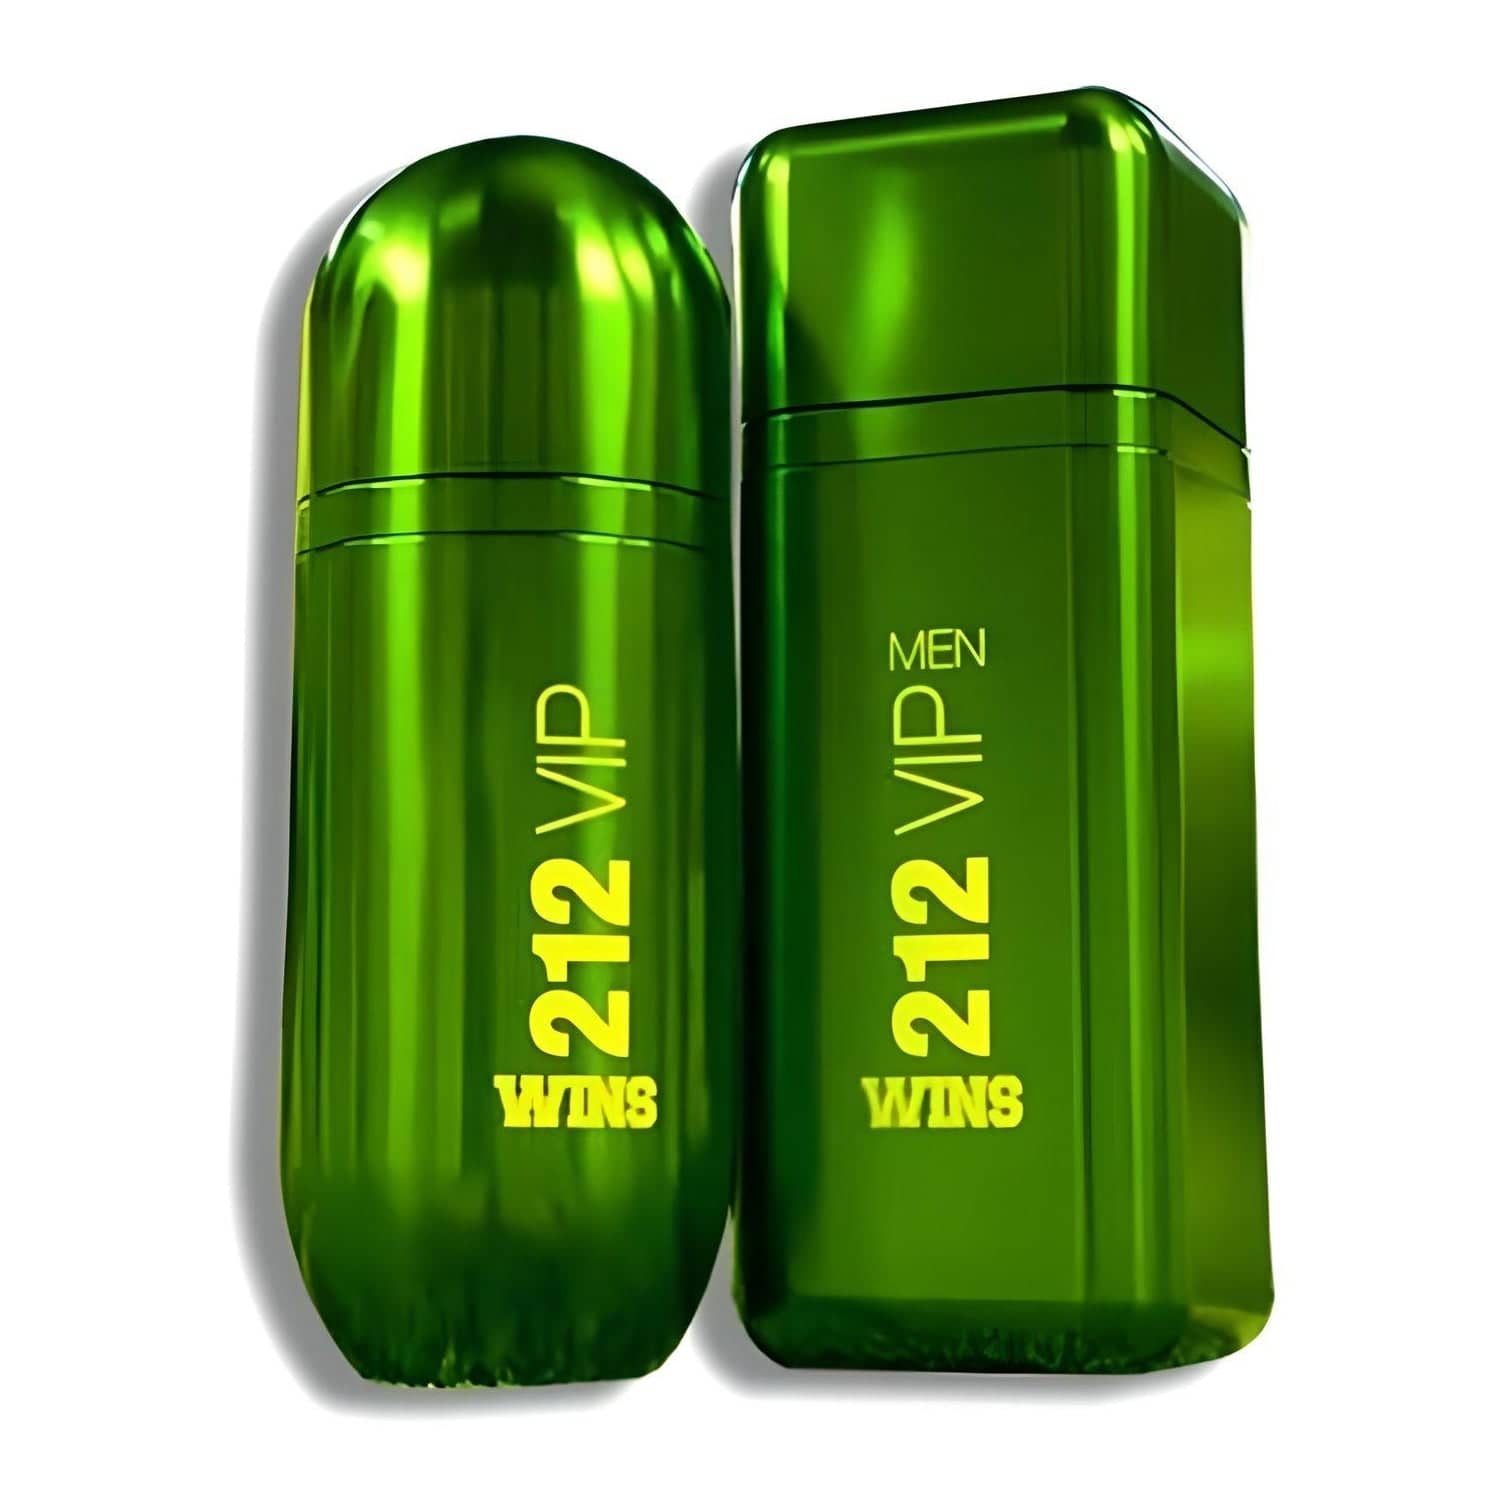 212 VIP WINS Limited Edition Eau de Parfum